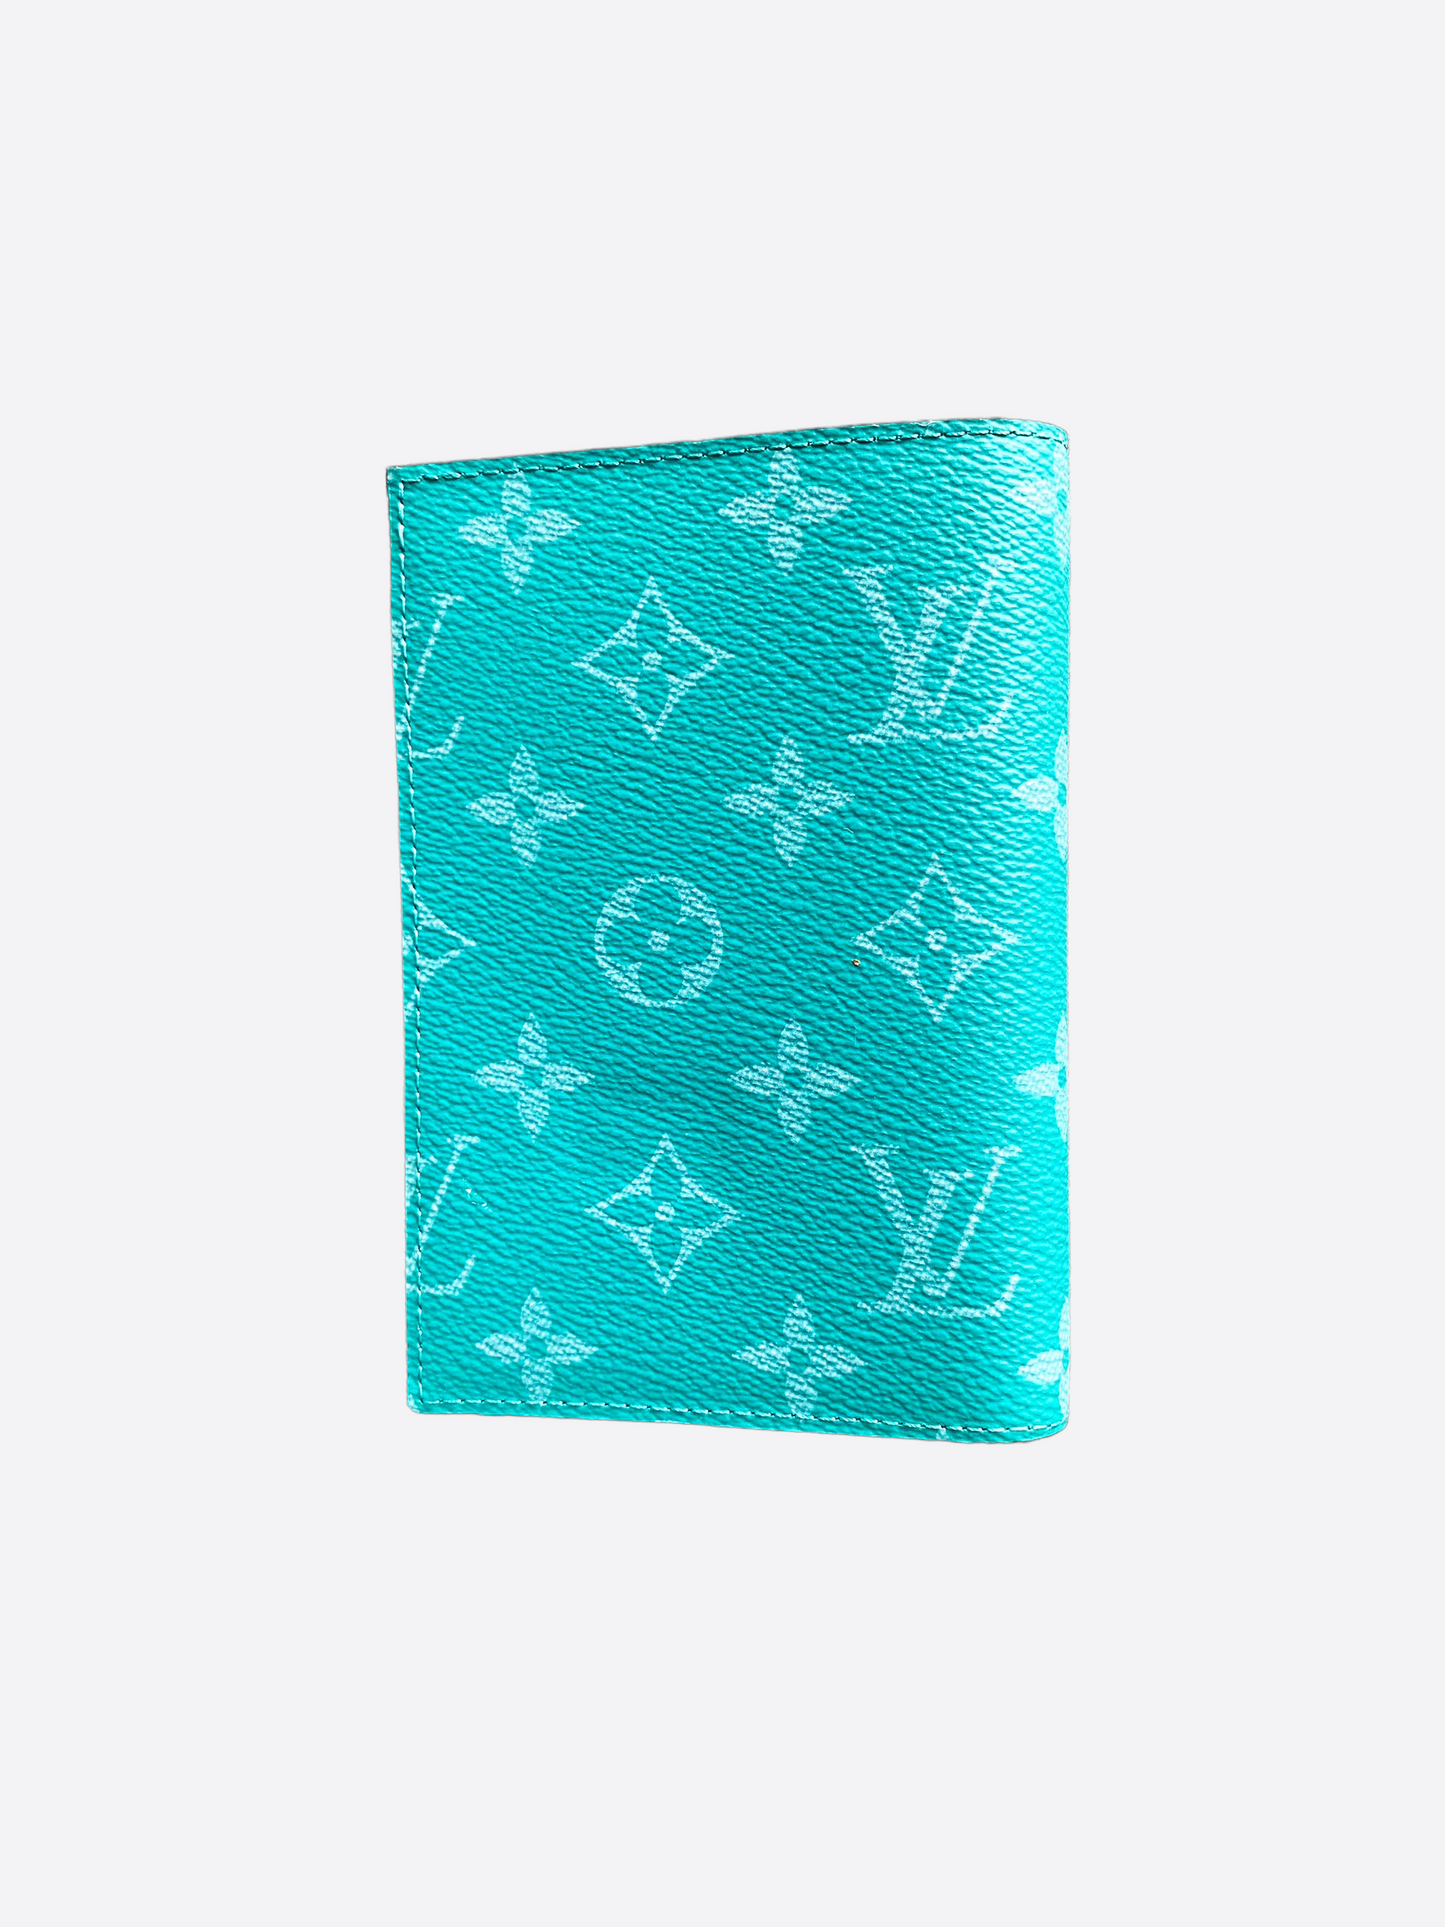 Louis Vuitton Turquoise Monogram Passport Cover